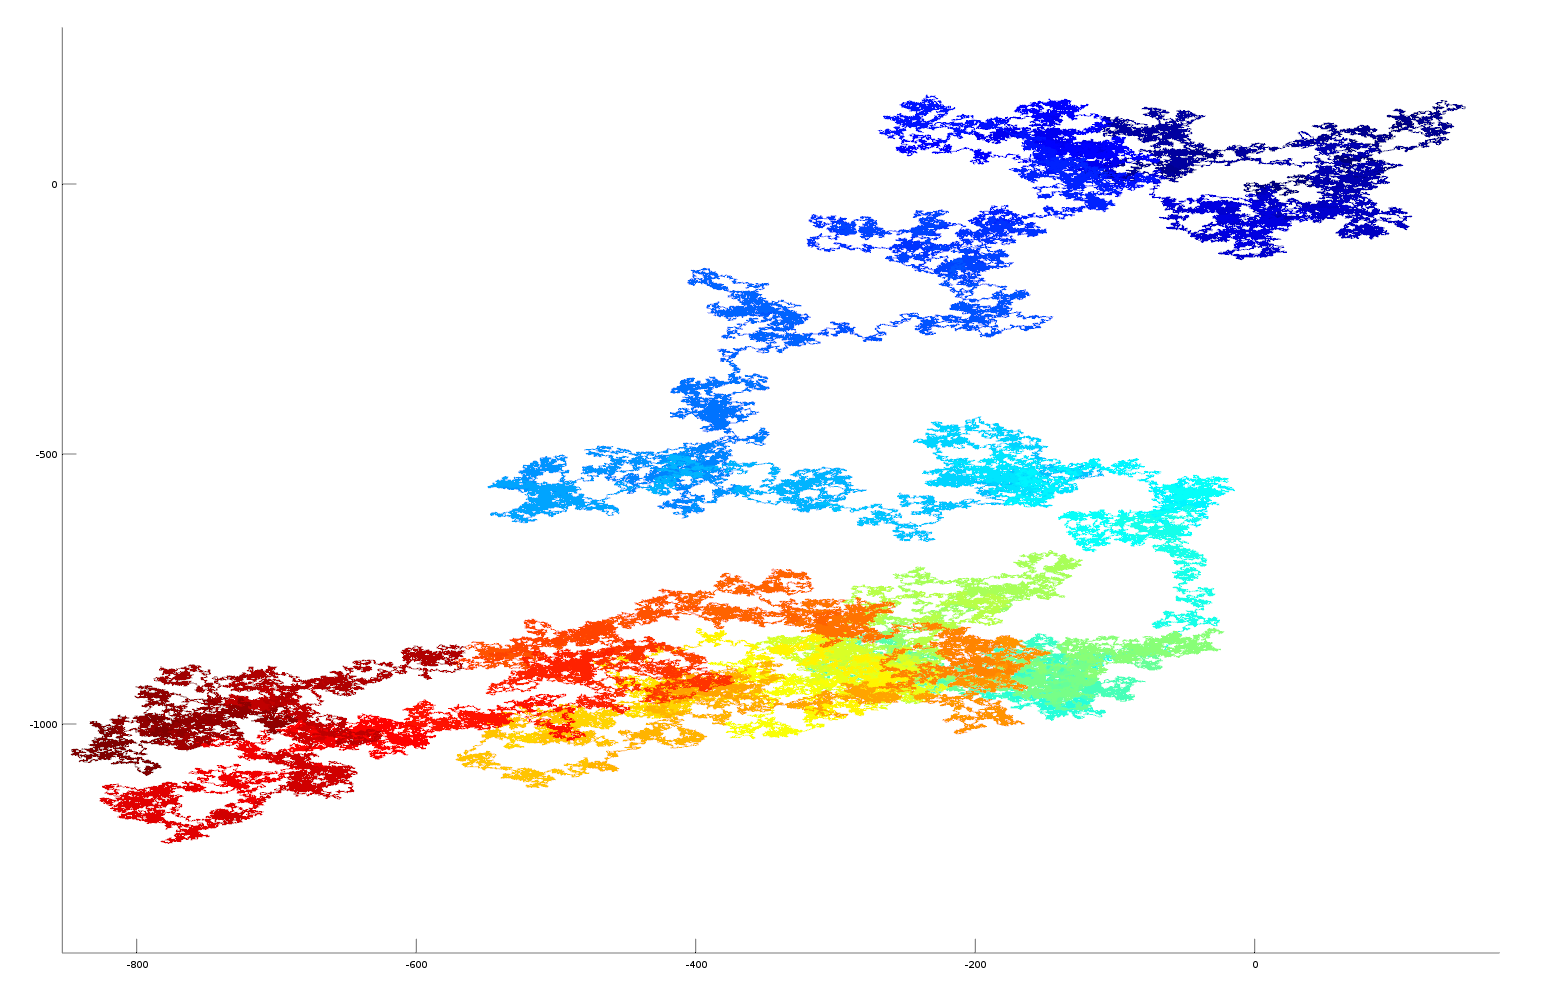 2D plot of pi as vector